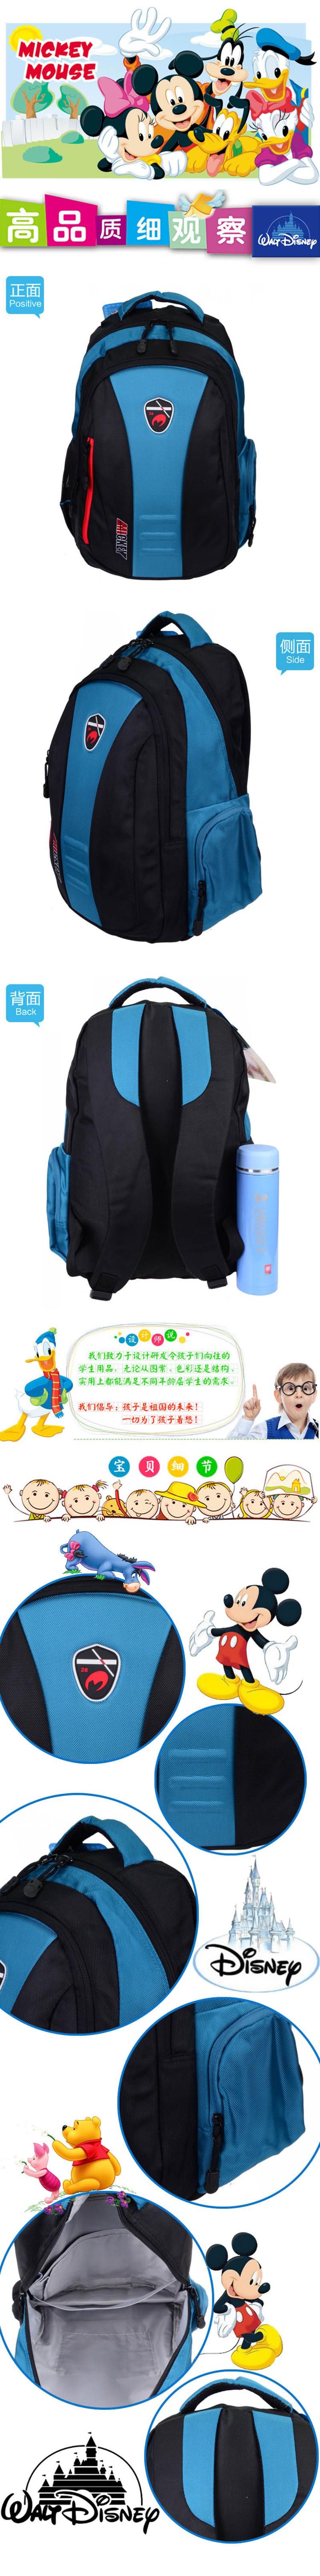 2015迪士尼新品双肩休闲款书包 大气简洁学生背包